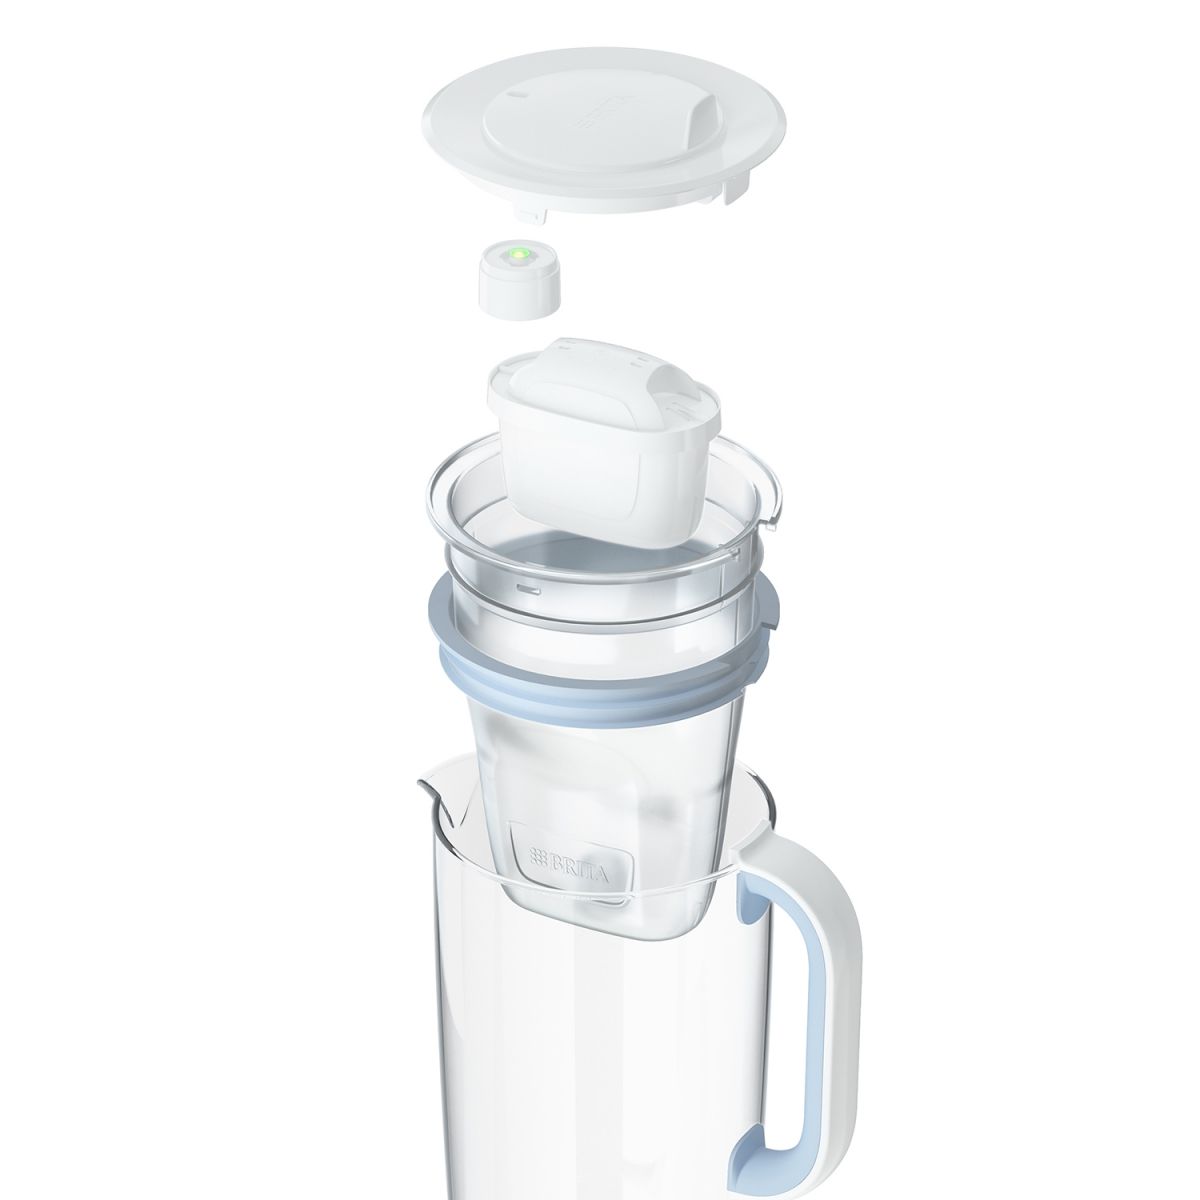 BRITA GLASS One, stekleni vrč za filtriranje vode 2,5 L